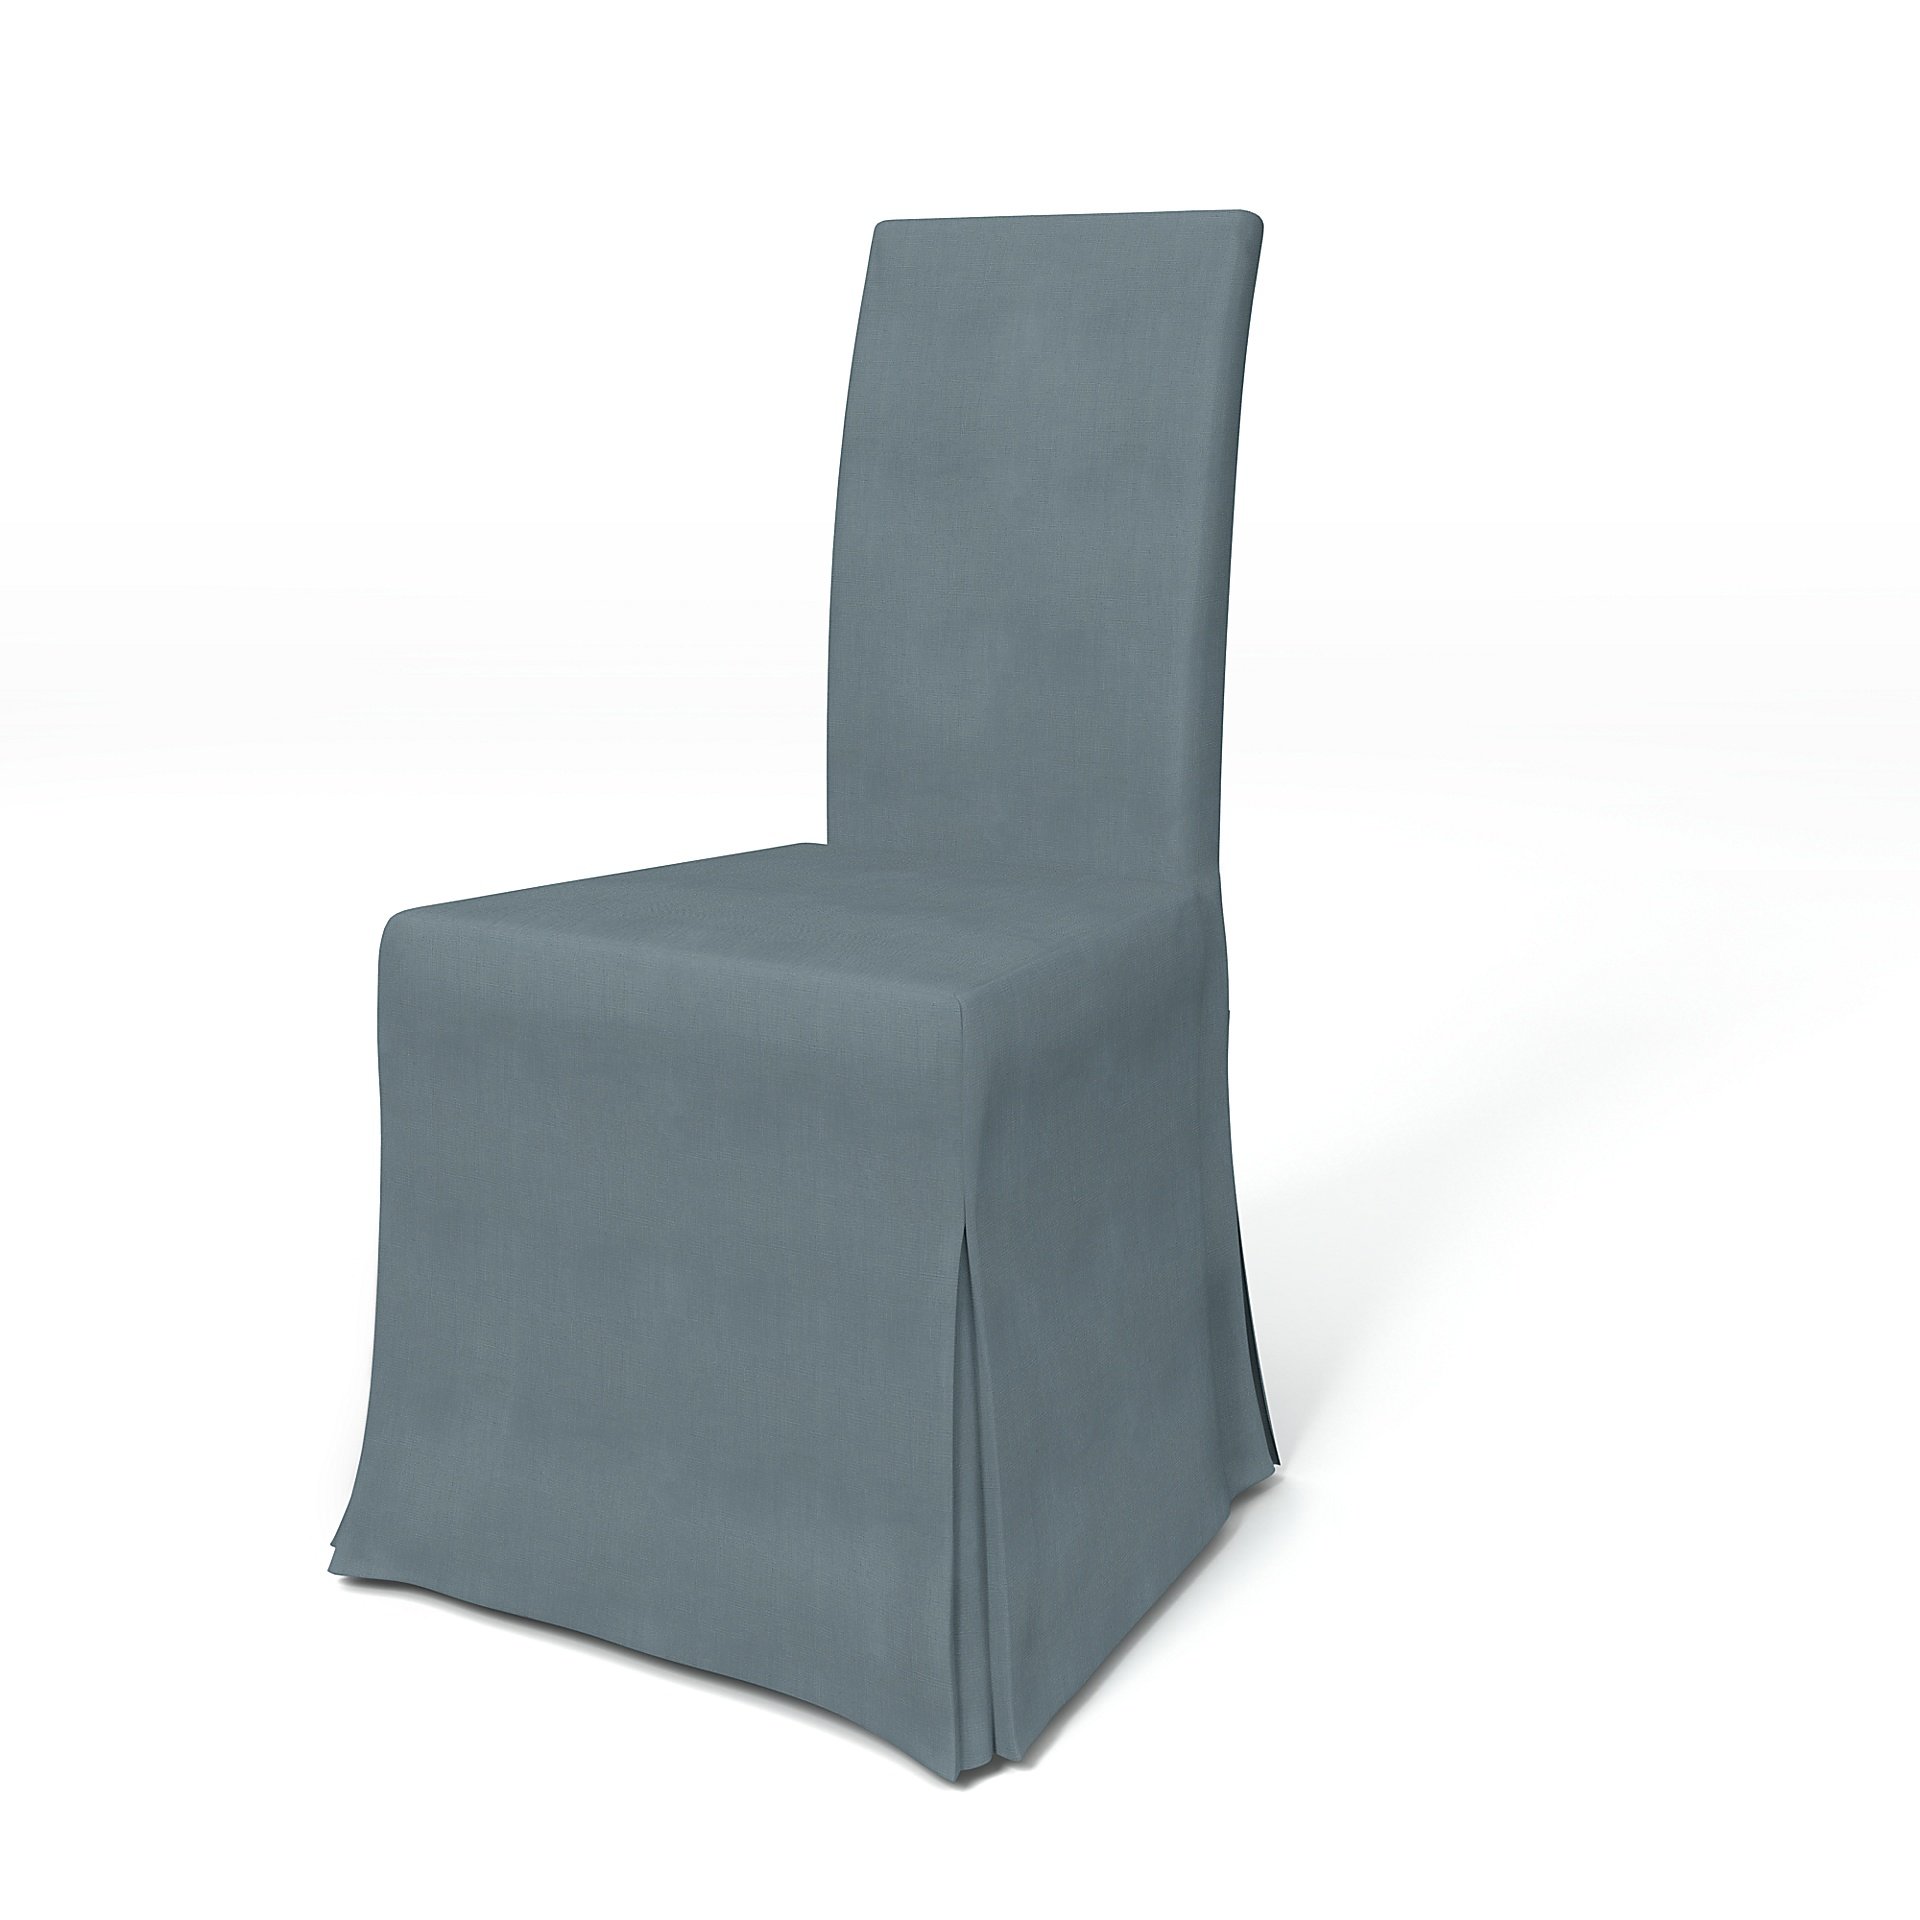 IKEA - Harry Dining Chair Cover, Dusk, Linen - Bemz